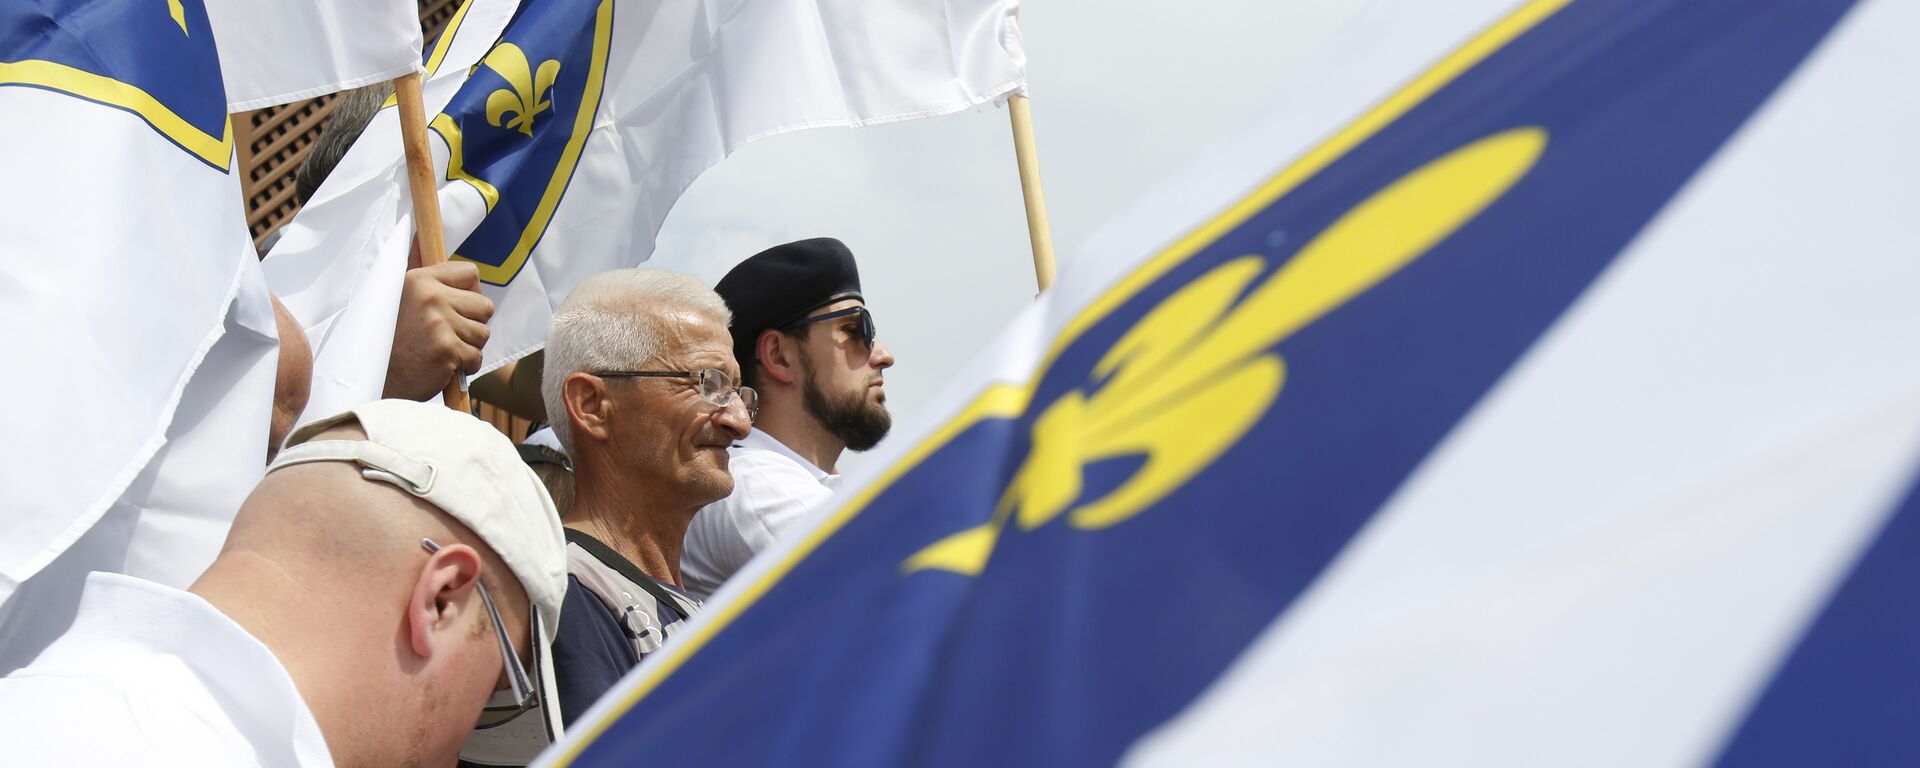 Bošnjačke zastave na protestu u Sarajevu, 4. maja 2018. godine - Sputnik Srbija, 1920, 09.06.2018